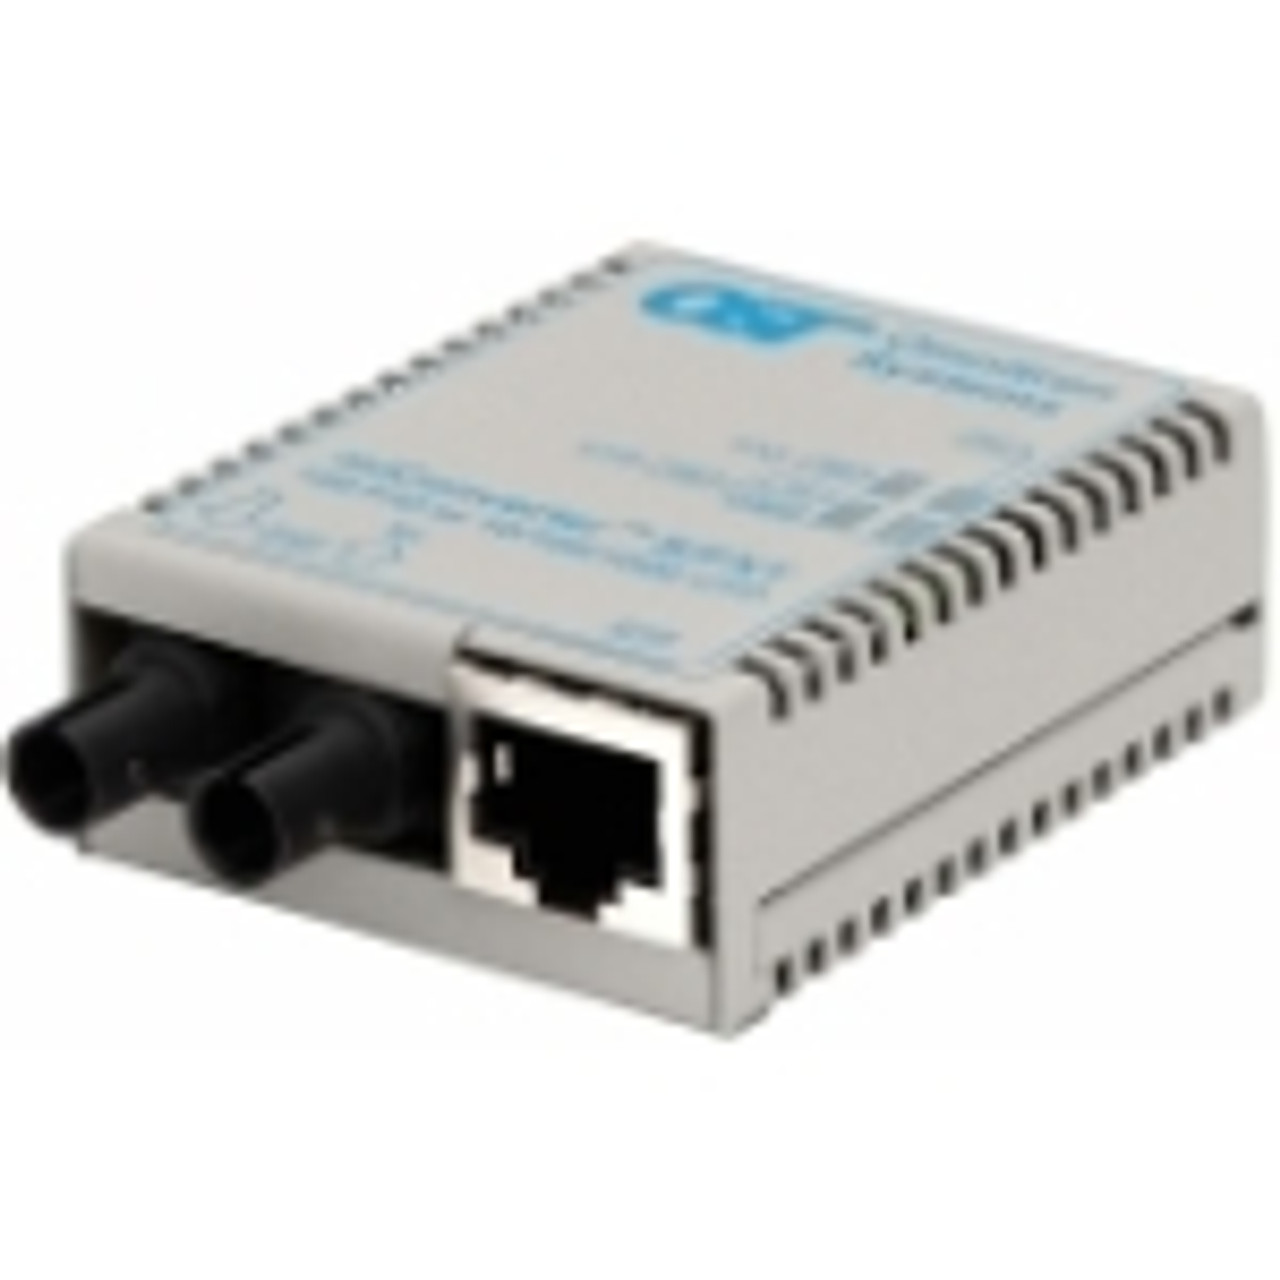 1600-0-6 miConverter/S 10/100 Ethernet Fiber Media Converter RJ45 ST Multimode 5km 1 x 10/100BASE-T, 1 x 100BASE-FX, USB Powered,